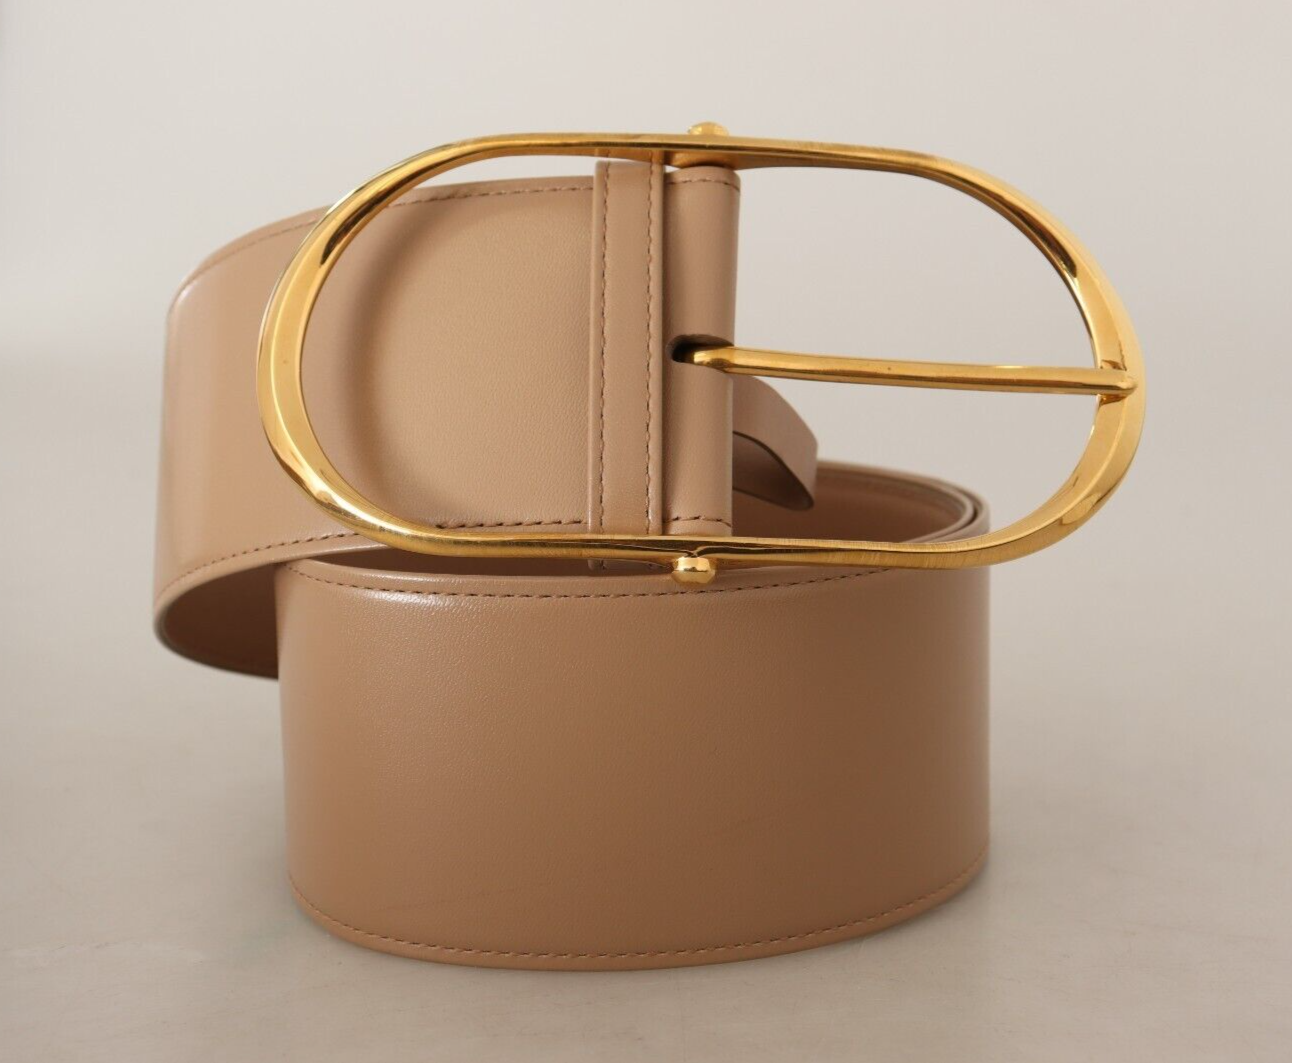 Dolce & Gabbana Dolce & Gabbana Beige Leather Gold Metal Oval Buckle Women's Belt